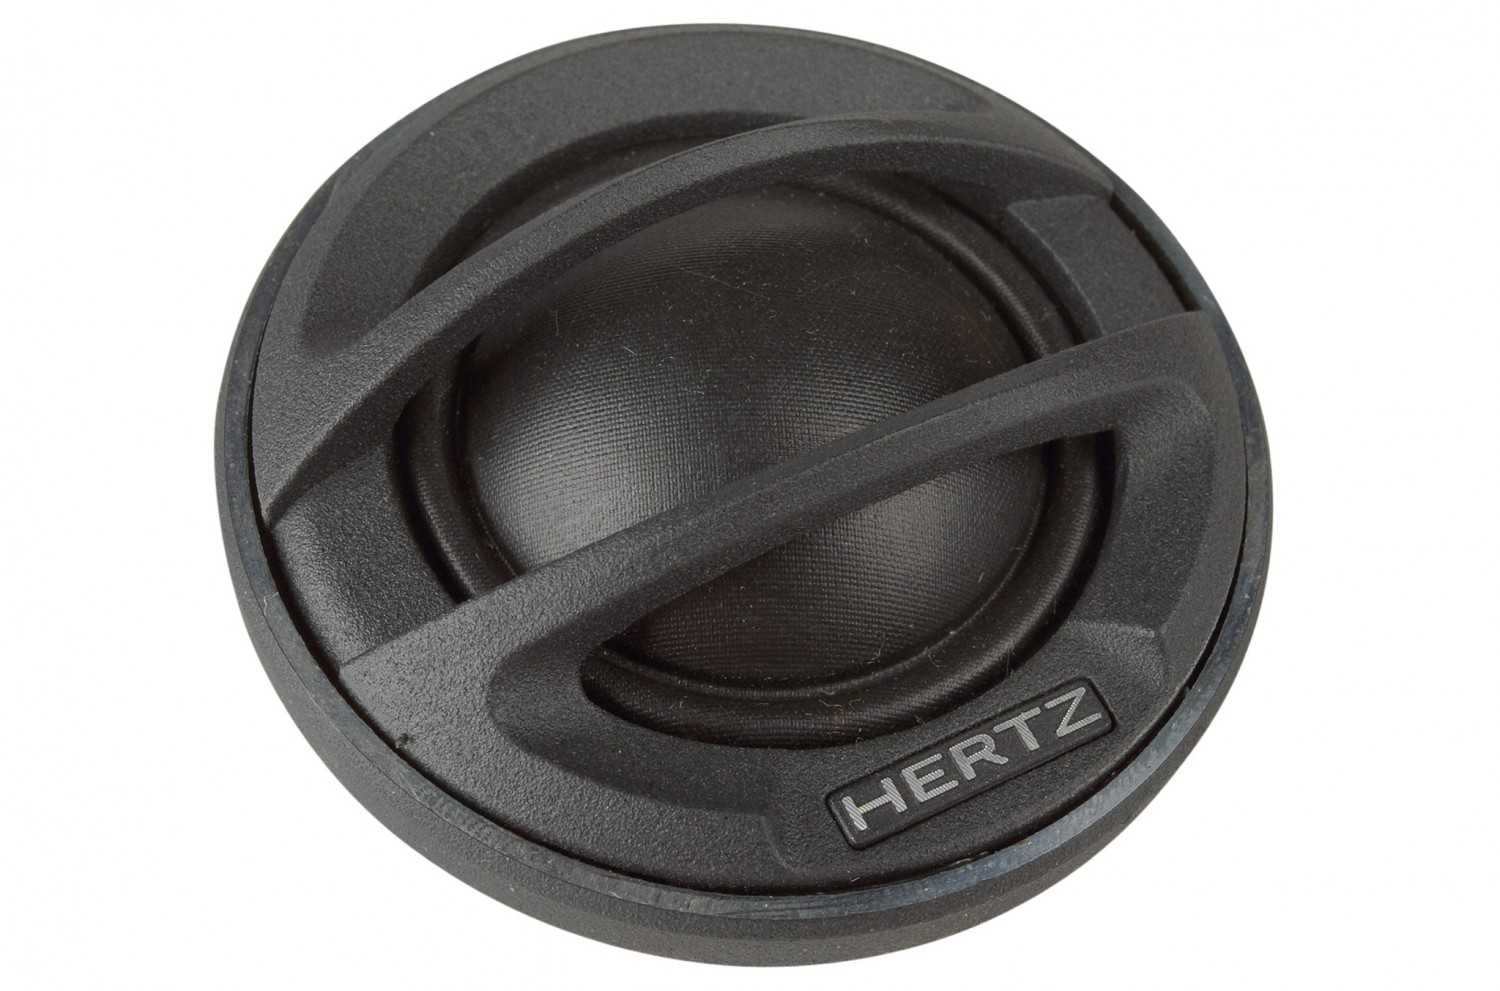 Car-HiFi-Lautsprecher 16cm Hertz MLK 700.3/ML 1800.3 im Test, Bild 5